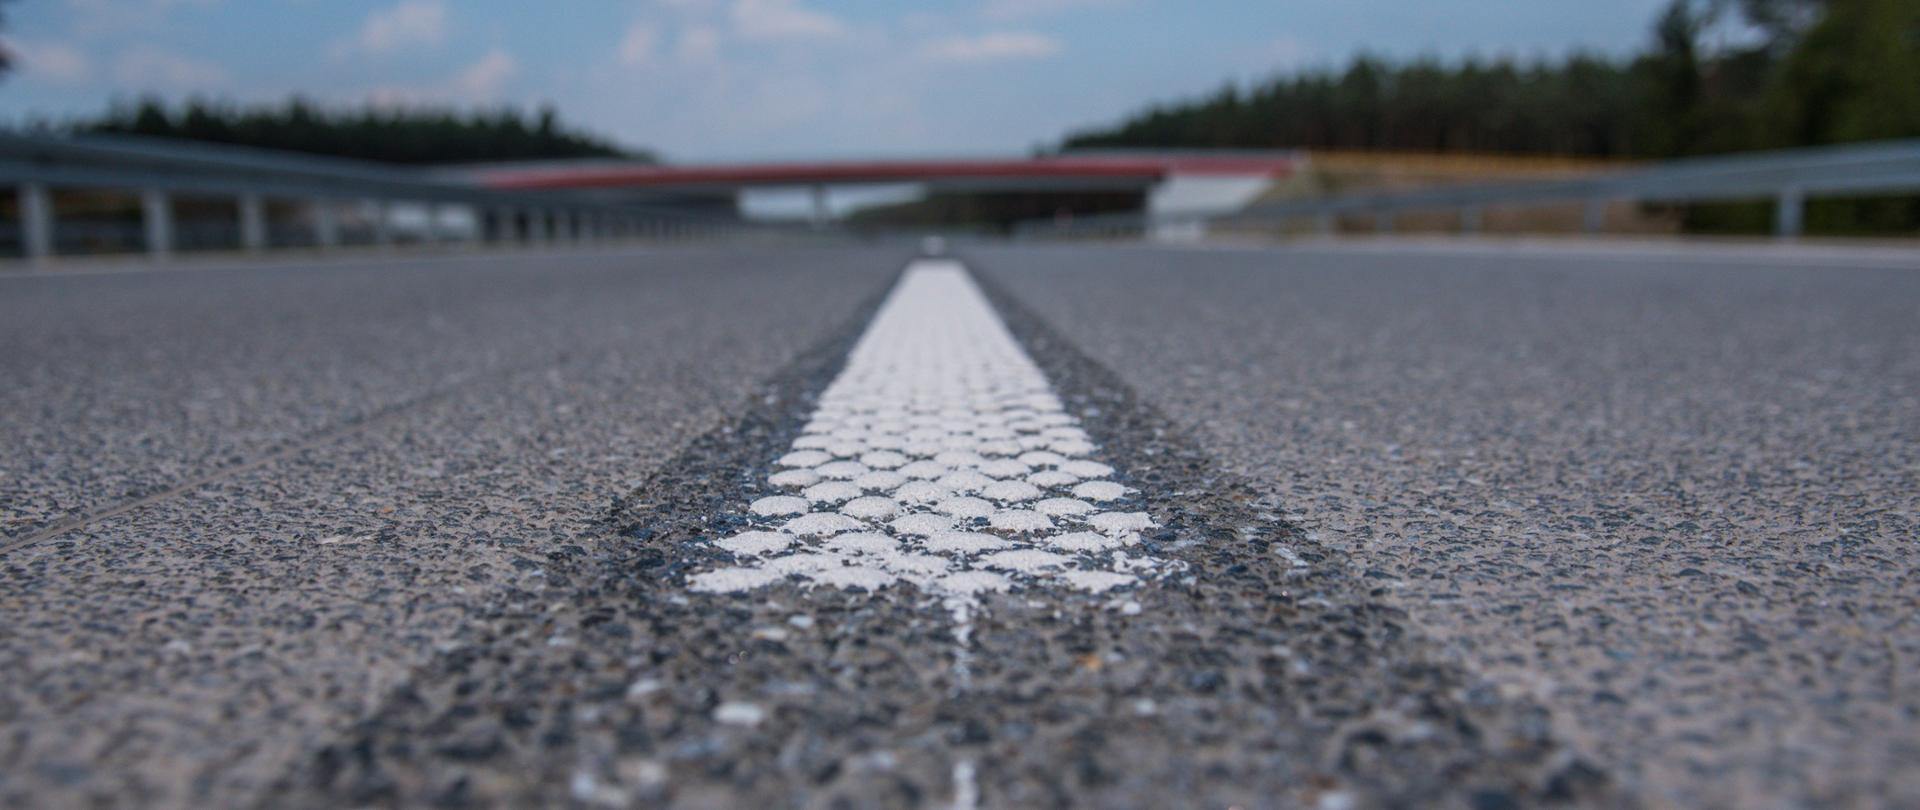 Zdjęcie przedstawia linię krawędziową poziomą na drodze ekspresowej